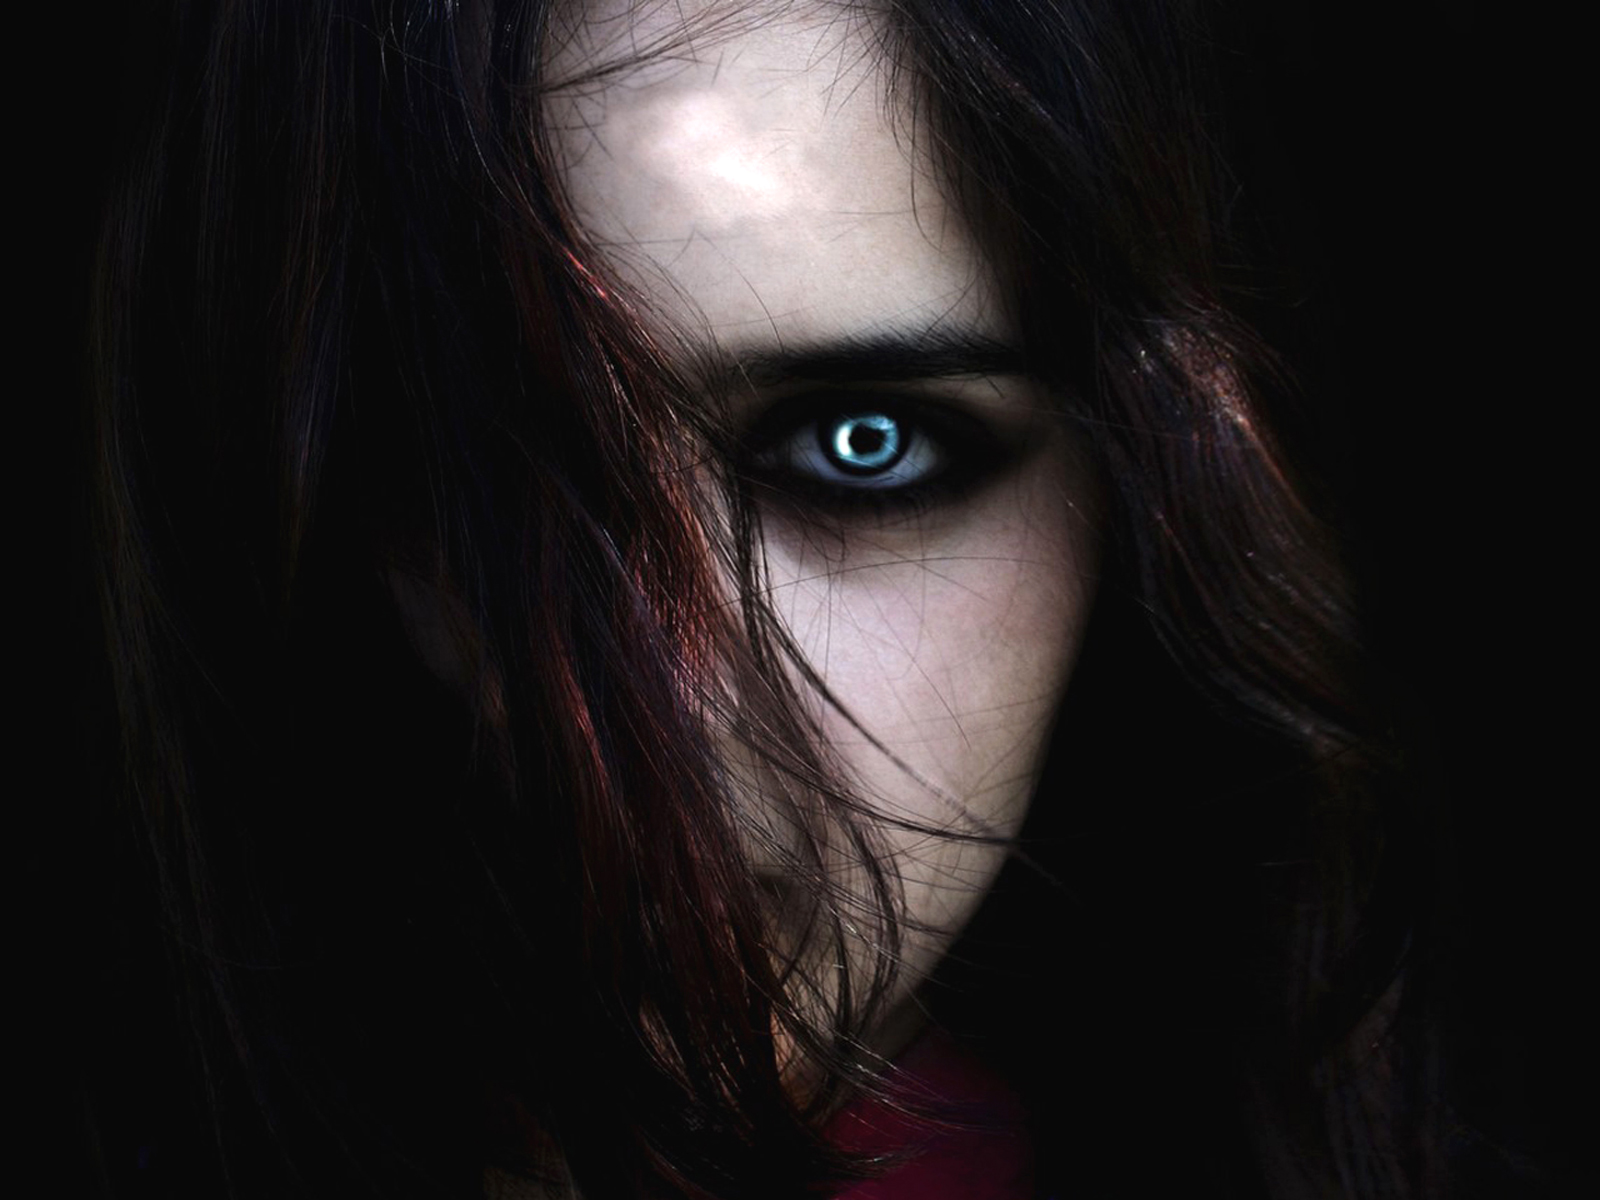 Vampire Eyes